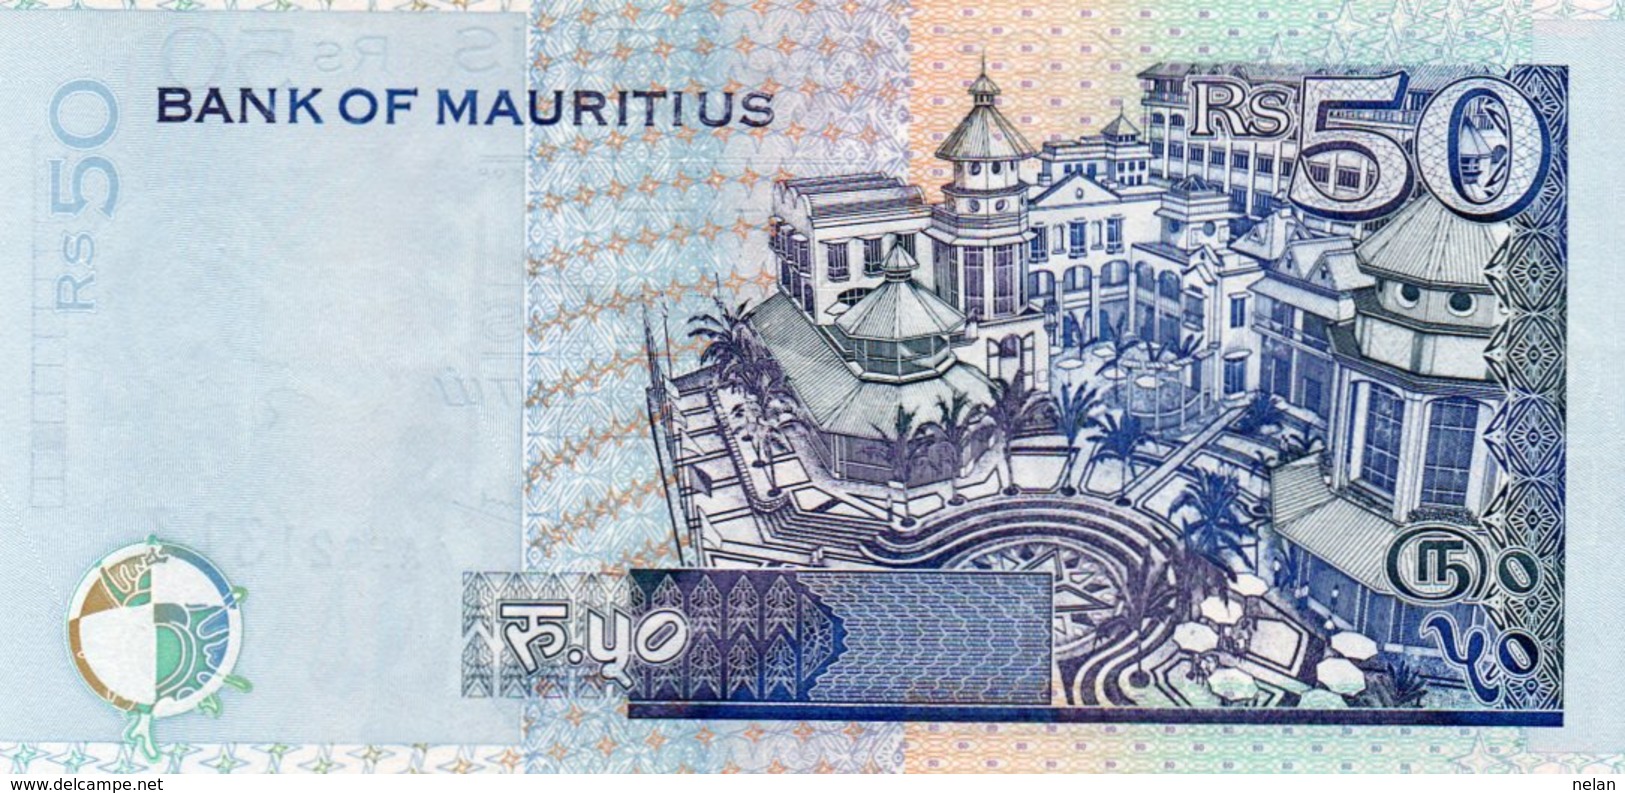 MAURITIUS 50 RUPEES  2001 P-50  UNC - Maurice